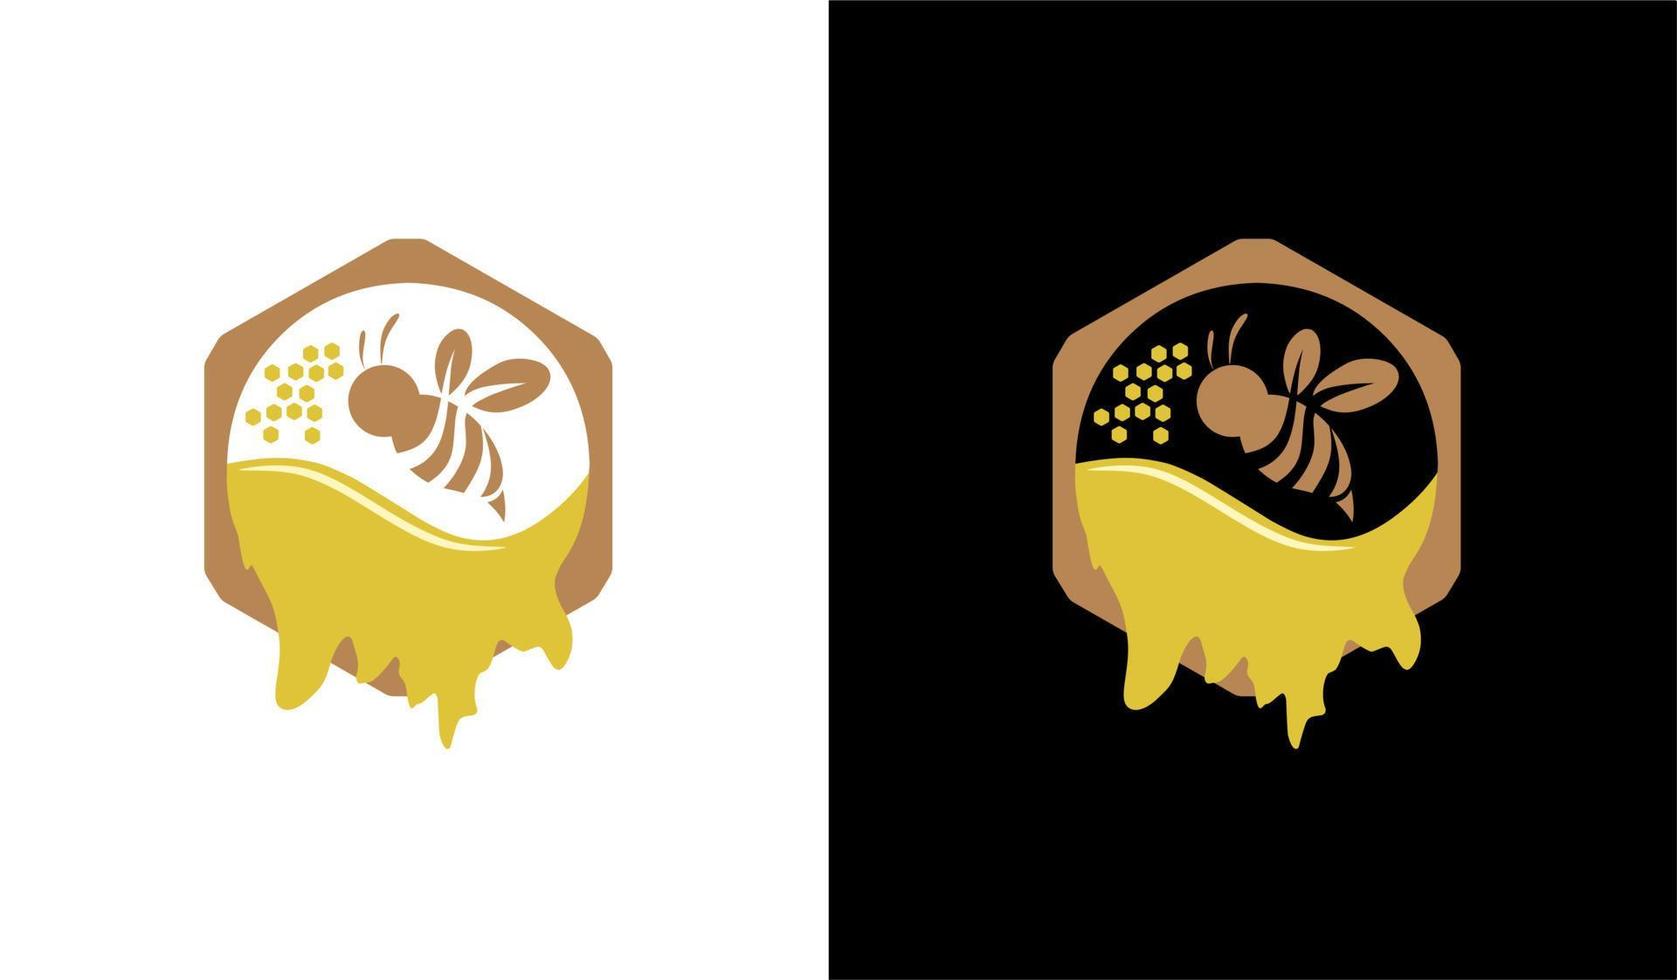 vliegende bij met zoete honing vloeistof, met zeshoek cirkel, honingbij logo vectorillustratie, geïsoleerd op een zwart-witte achtergrond vector